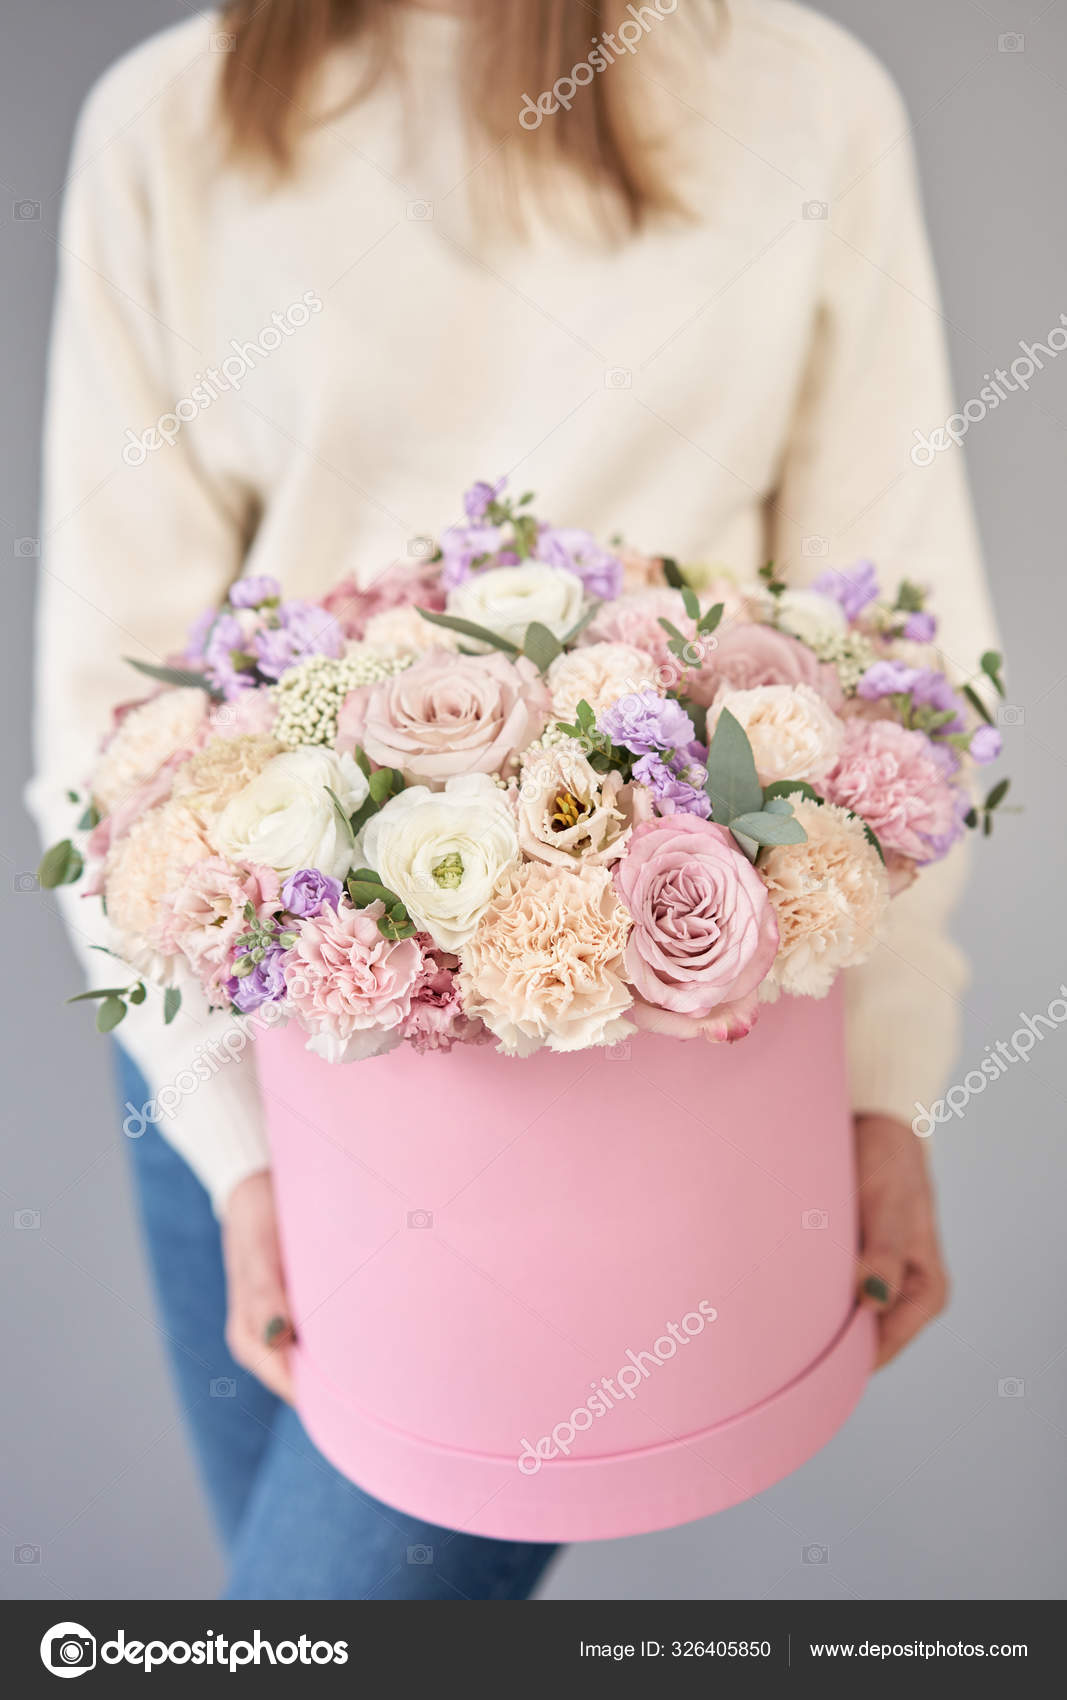 ROUND BOX: Pink Garden Mix Floral Arrangement